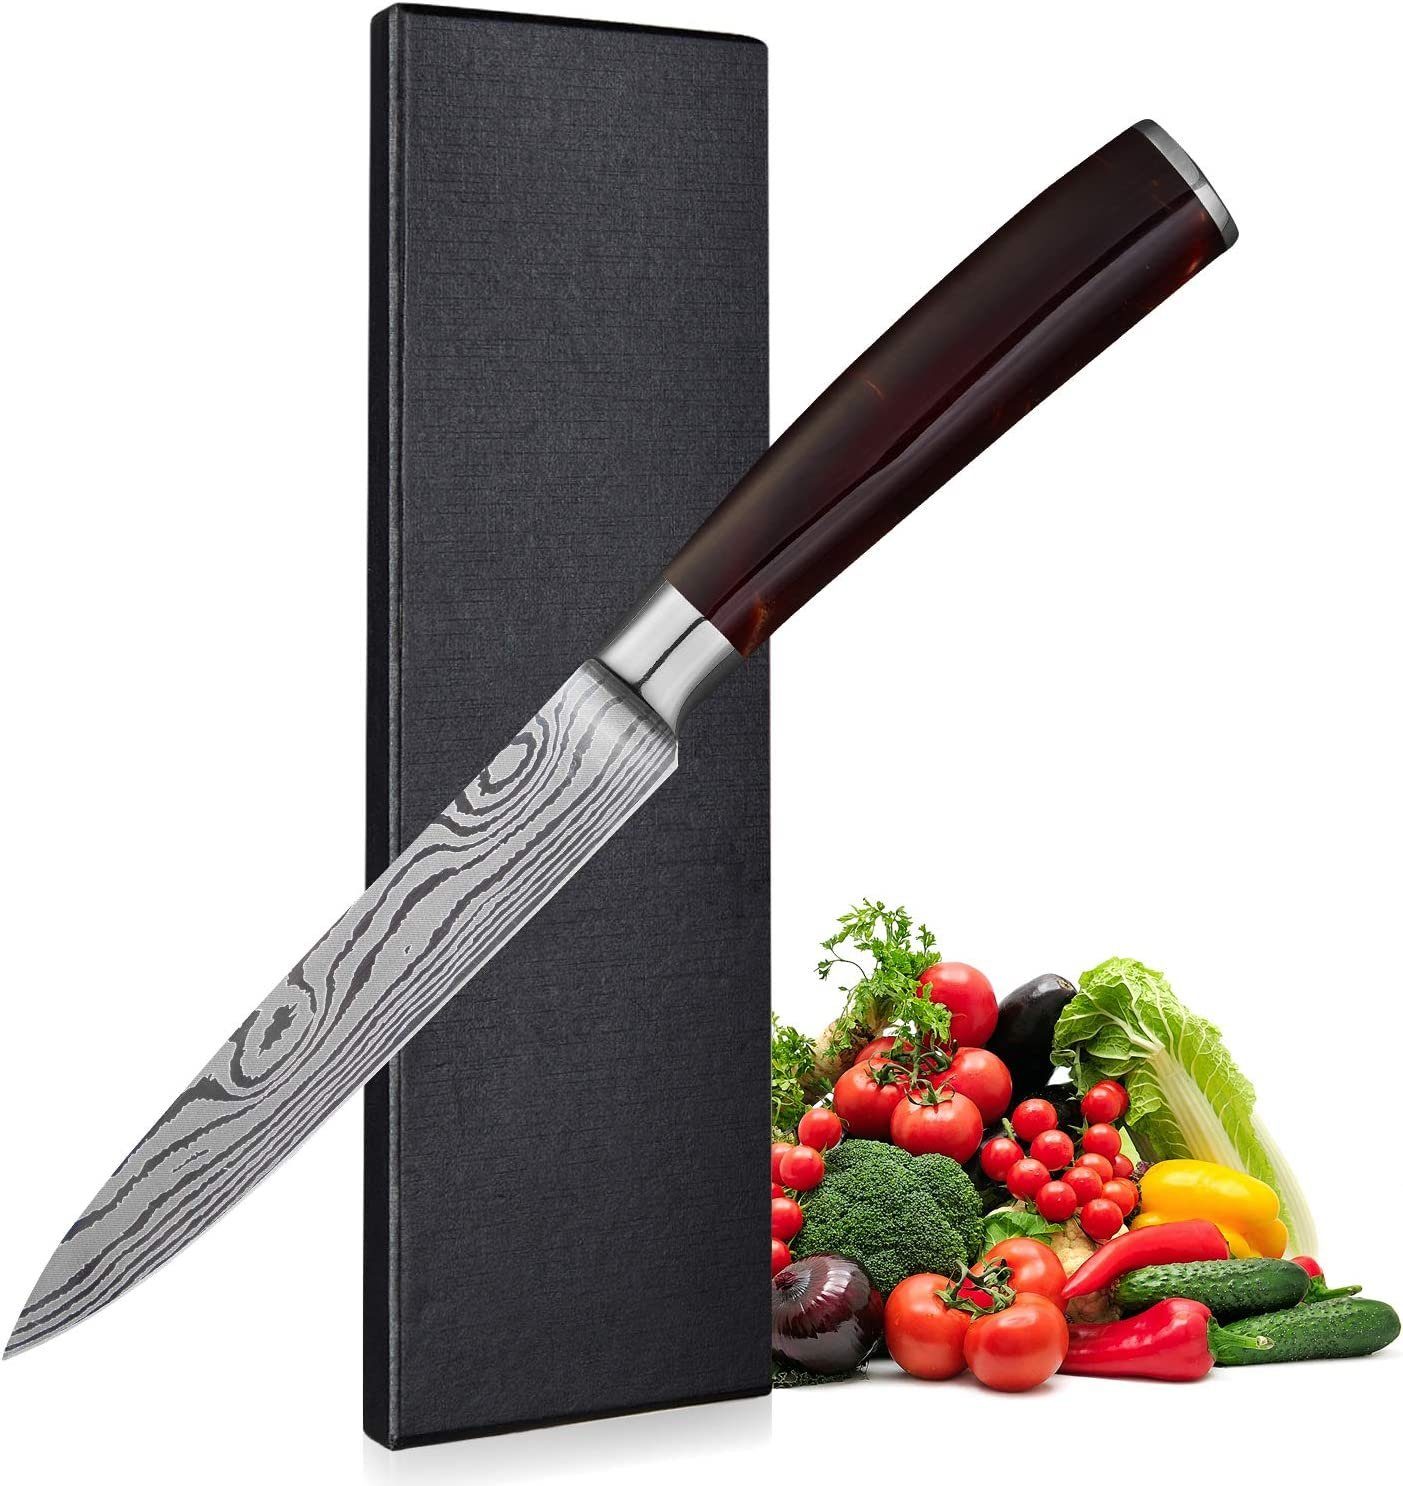 Gemüsemesser Küchenmesser safety 5 Zoll Allzweckmesser Home Obstmesser